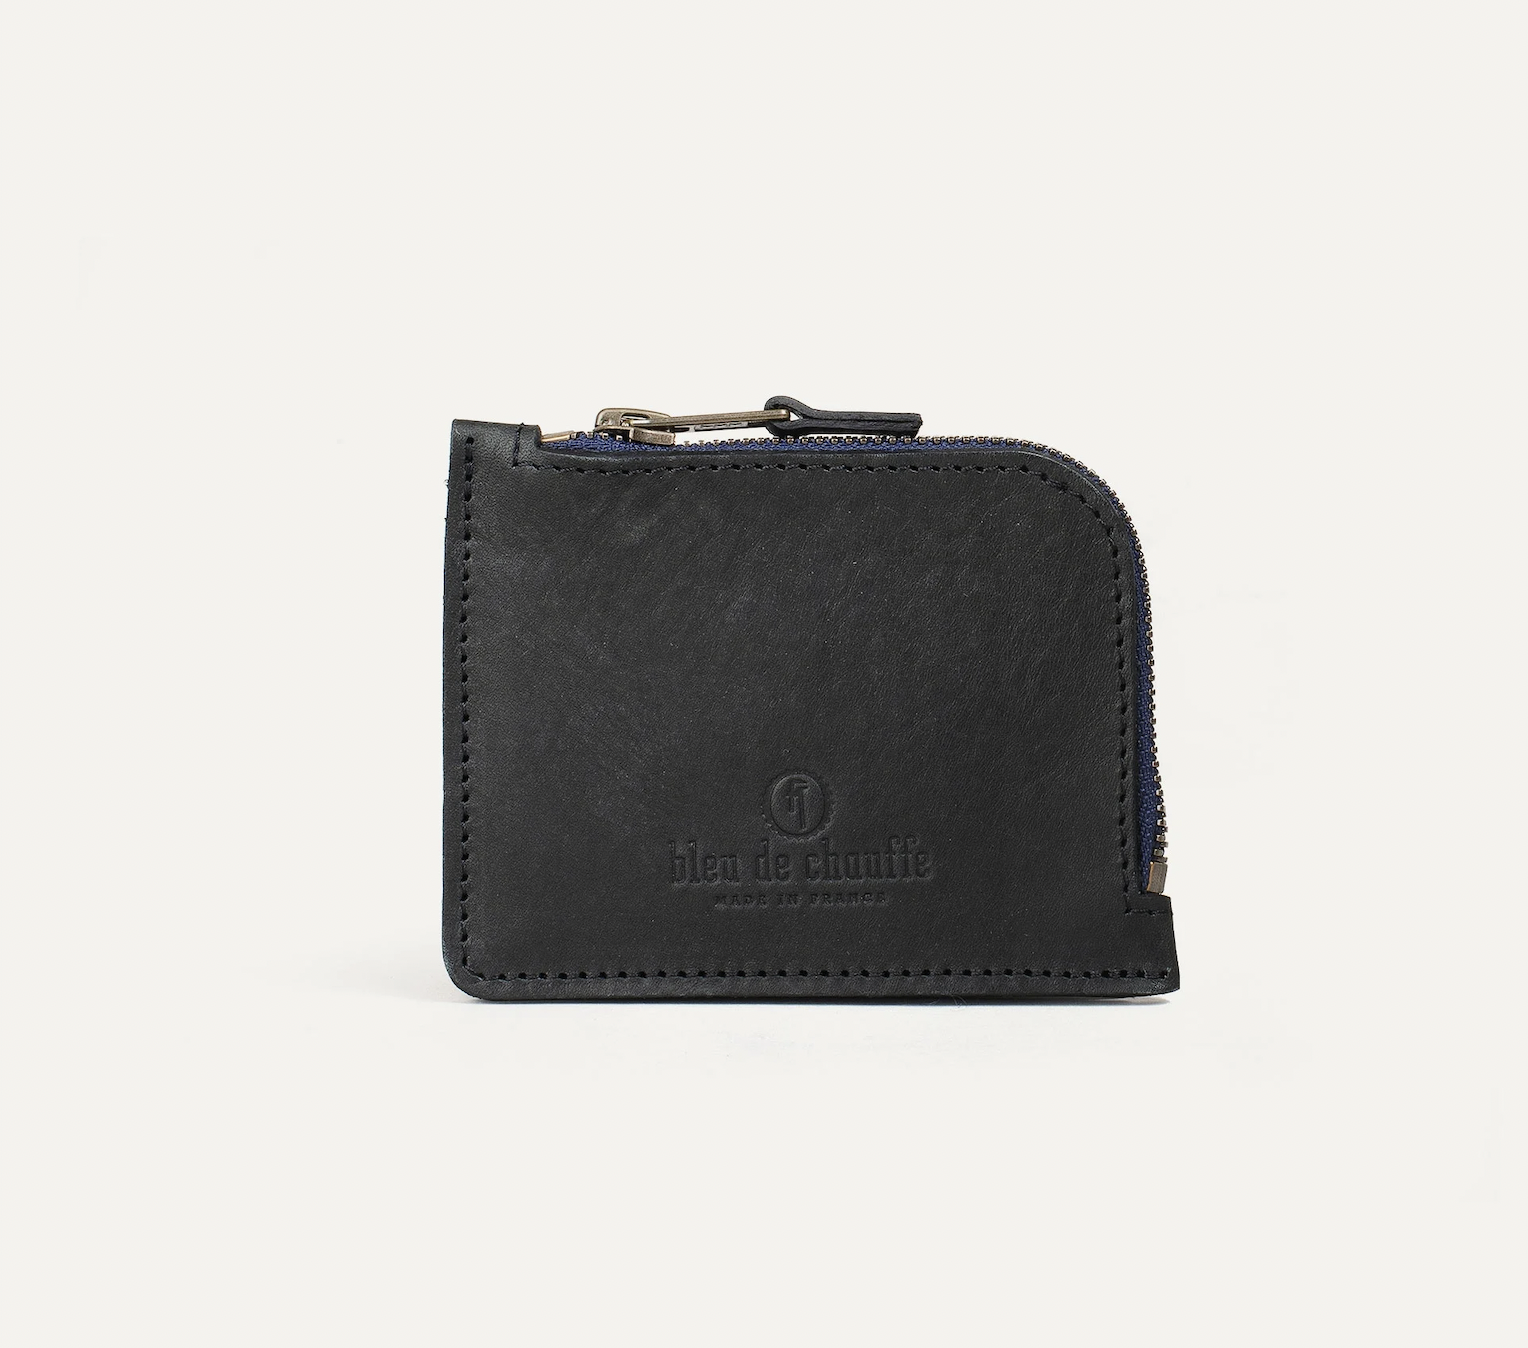 AS small zipped wallet  Bleu de Chauffe — Calame Palma